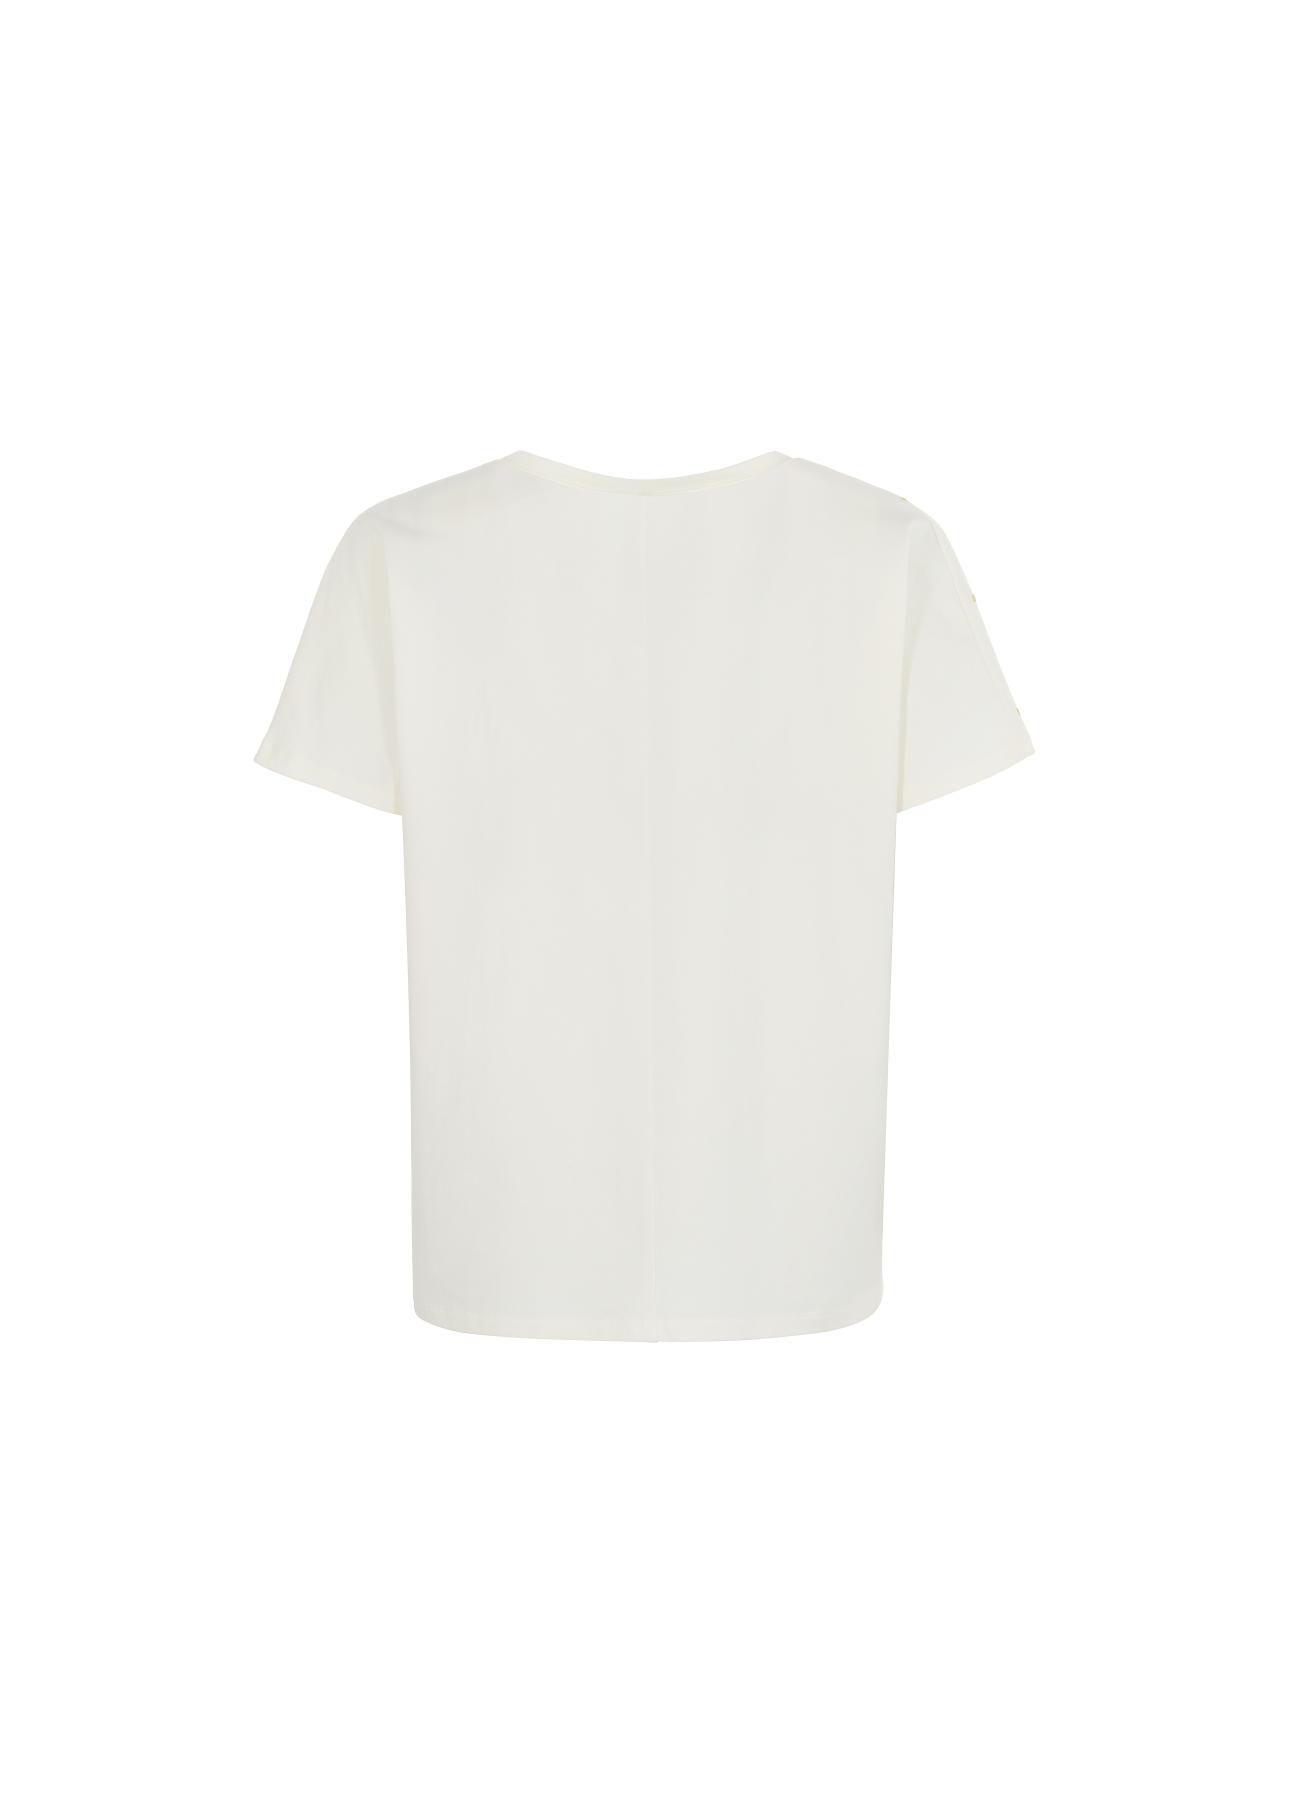 Mleczny T-shirt damski z aplikacją TSHDT-0092-12(W22)